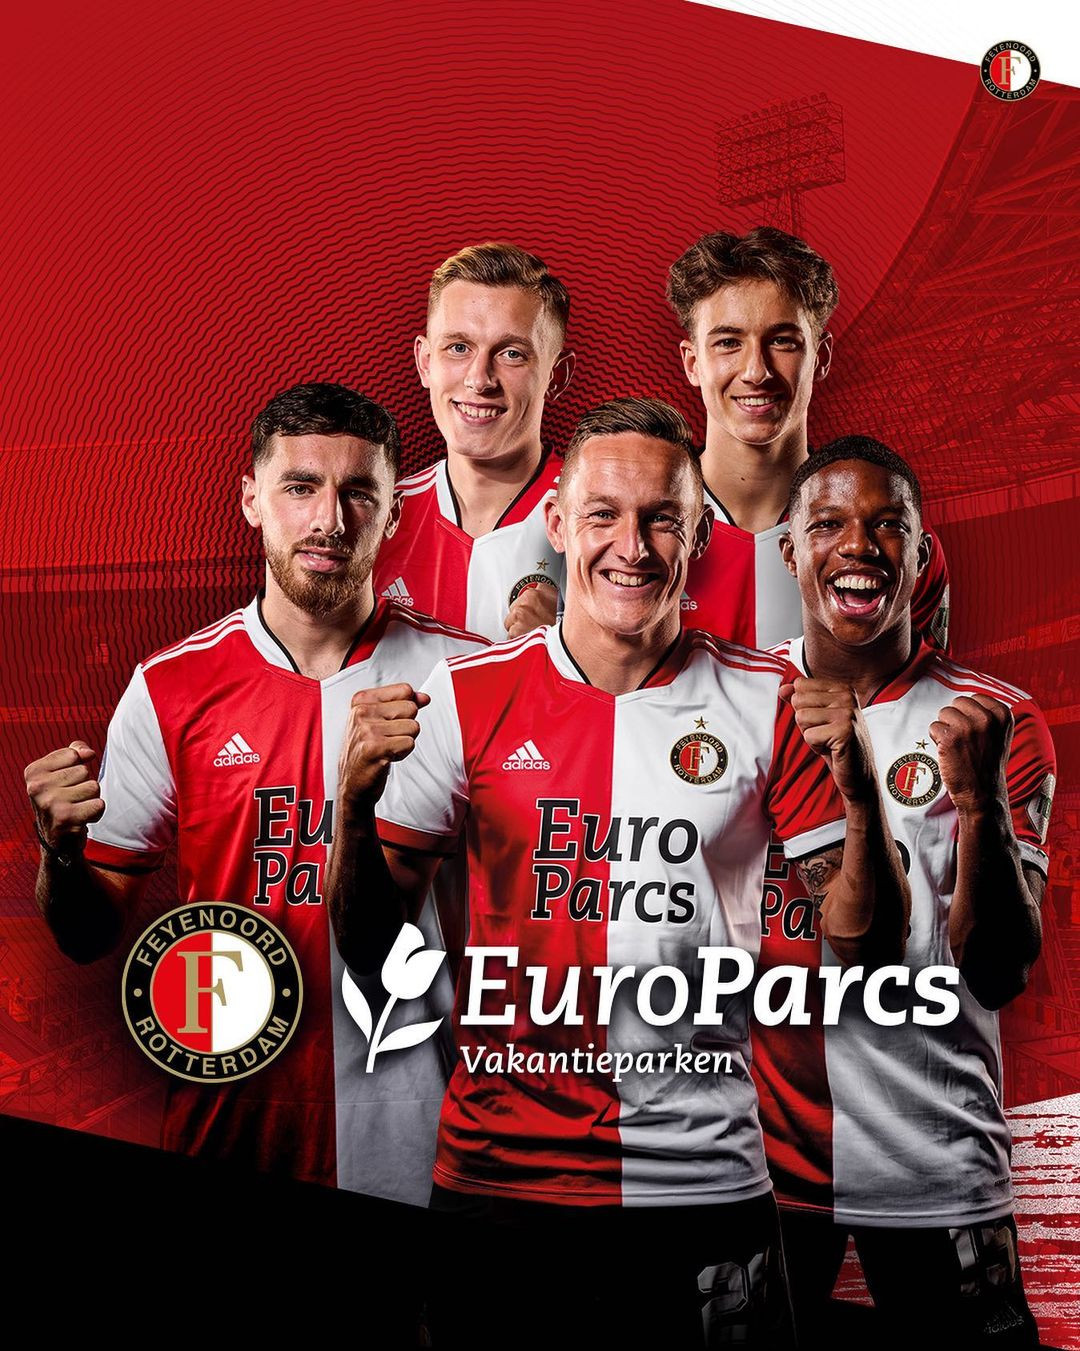 Feyenoord en EuroParcs verlengen contract tot 2023